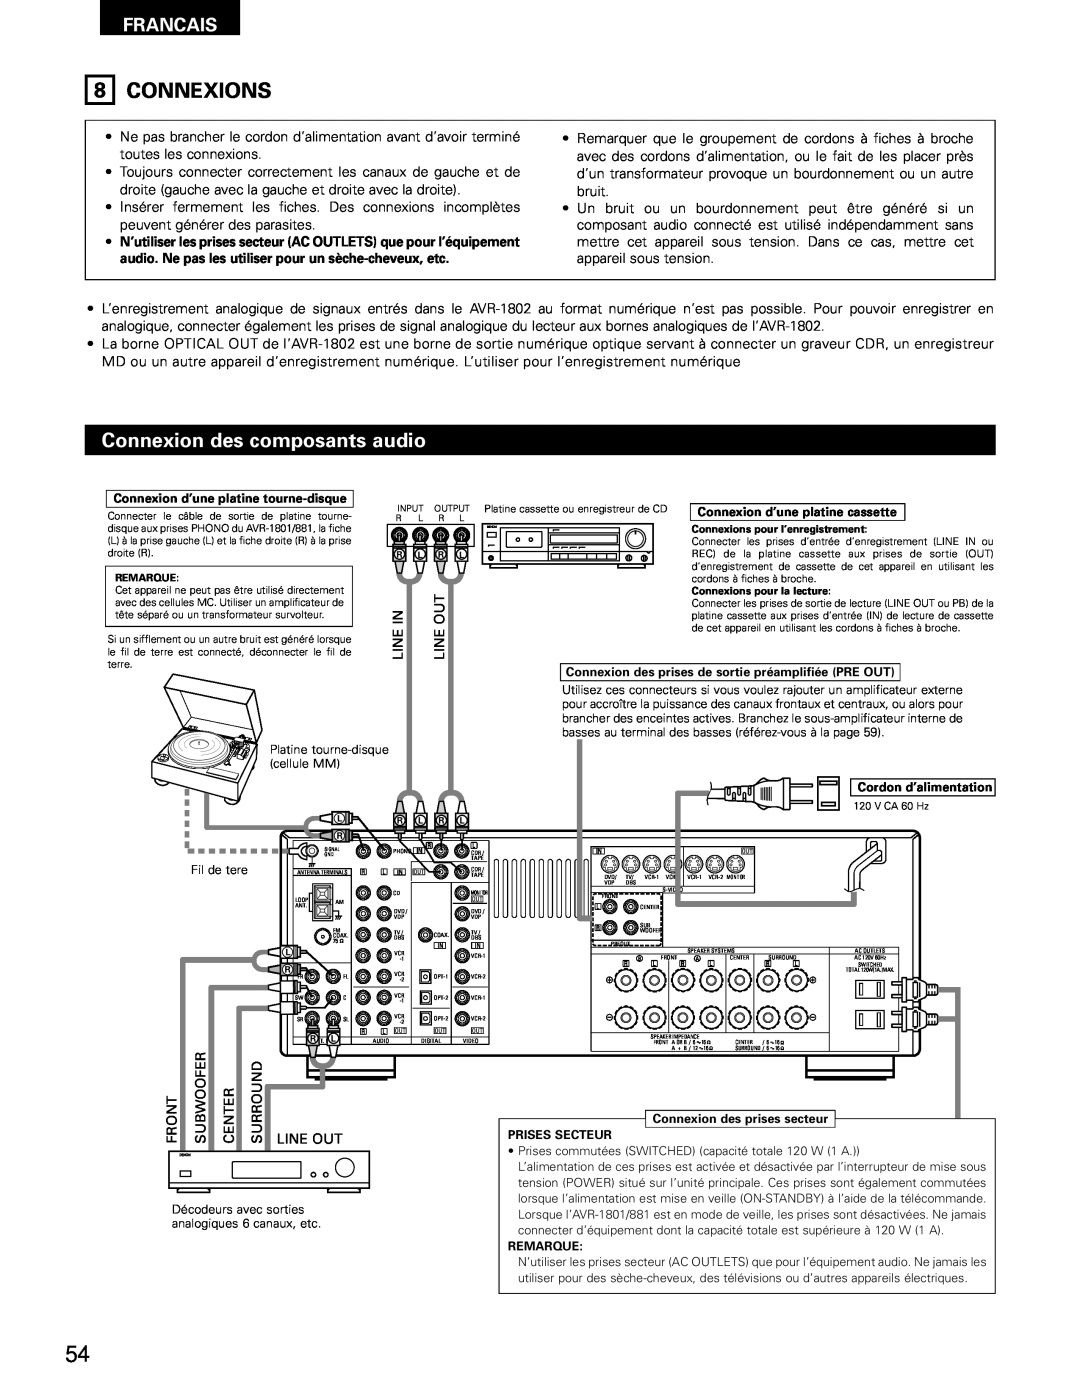 Denon AVR-1802/882 manual Connexions, Connexion des composants audio, Francais 